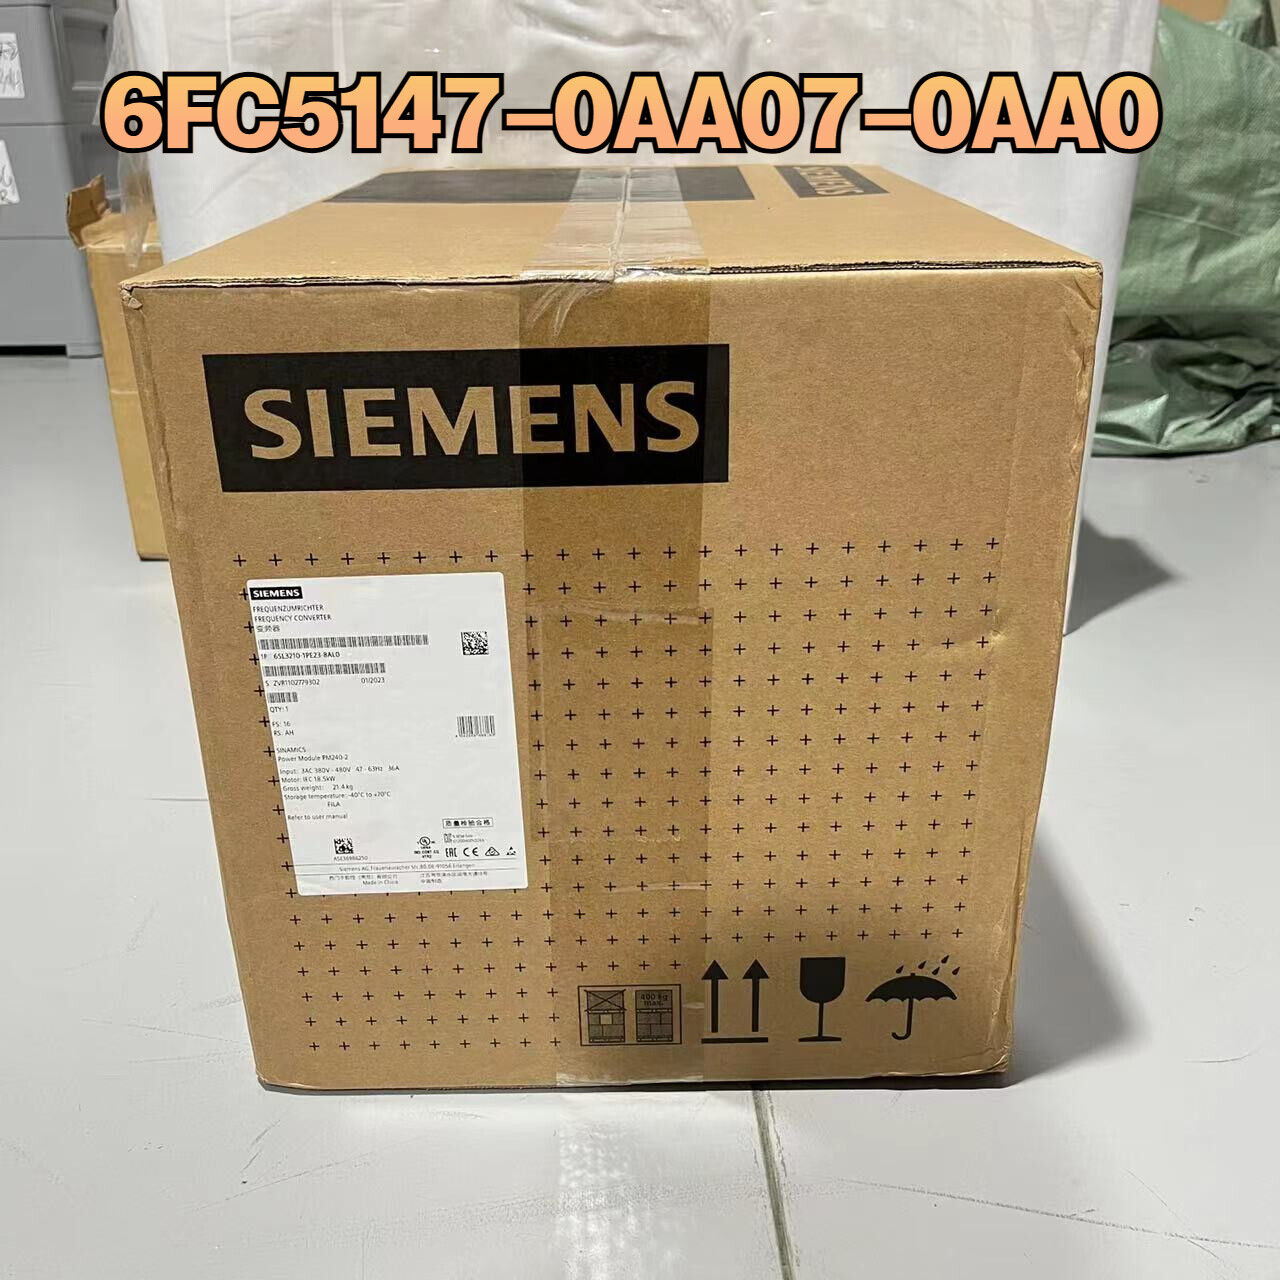 Siemens SINUMERIK 840C/840CE FAN INSERT COMPLETE (1.5W) 6FC5147-0AA07-0AA0